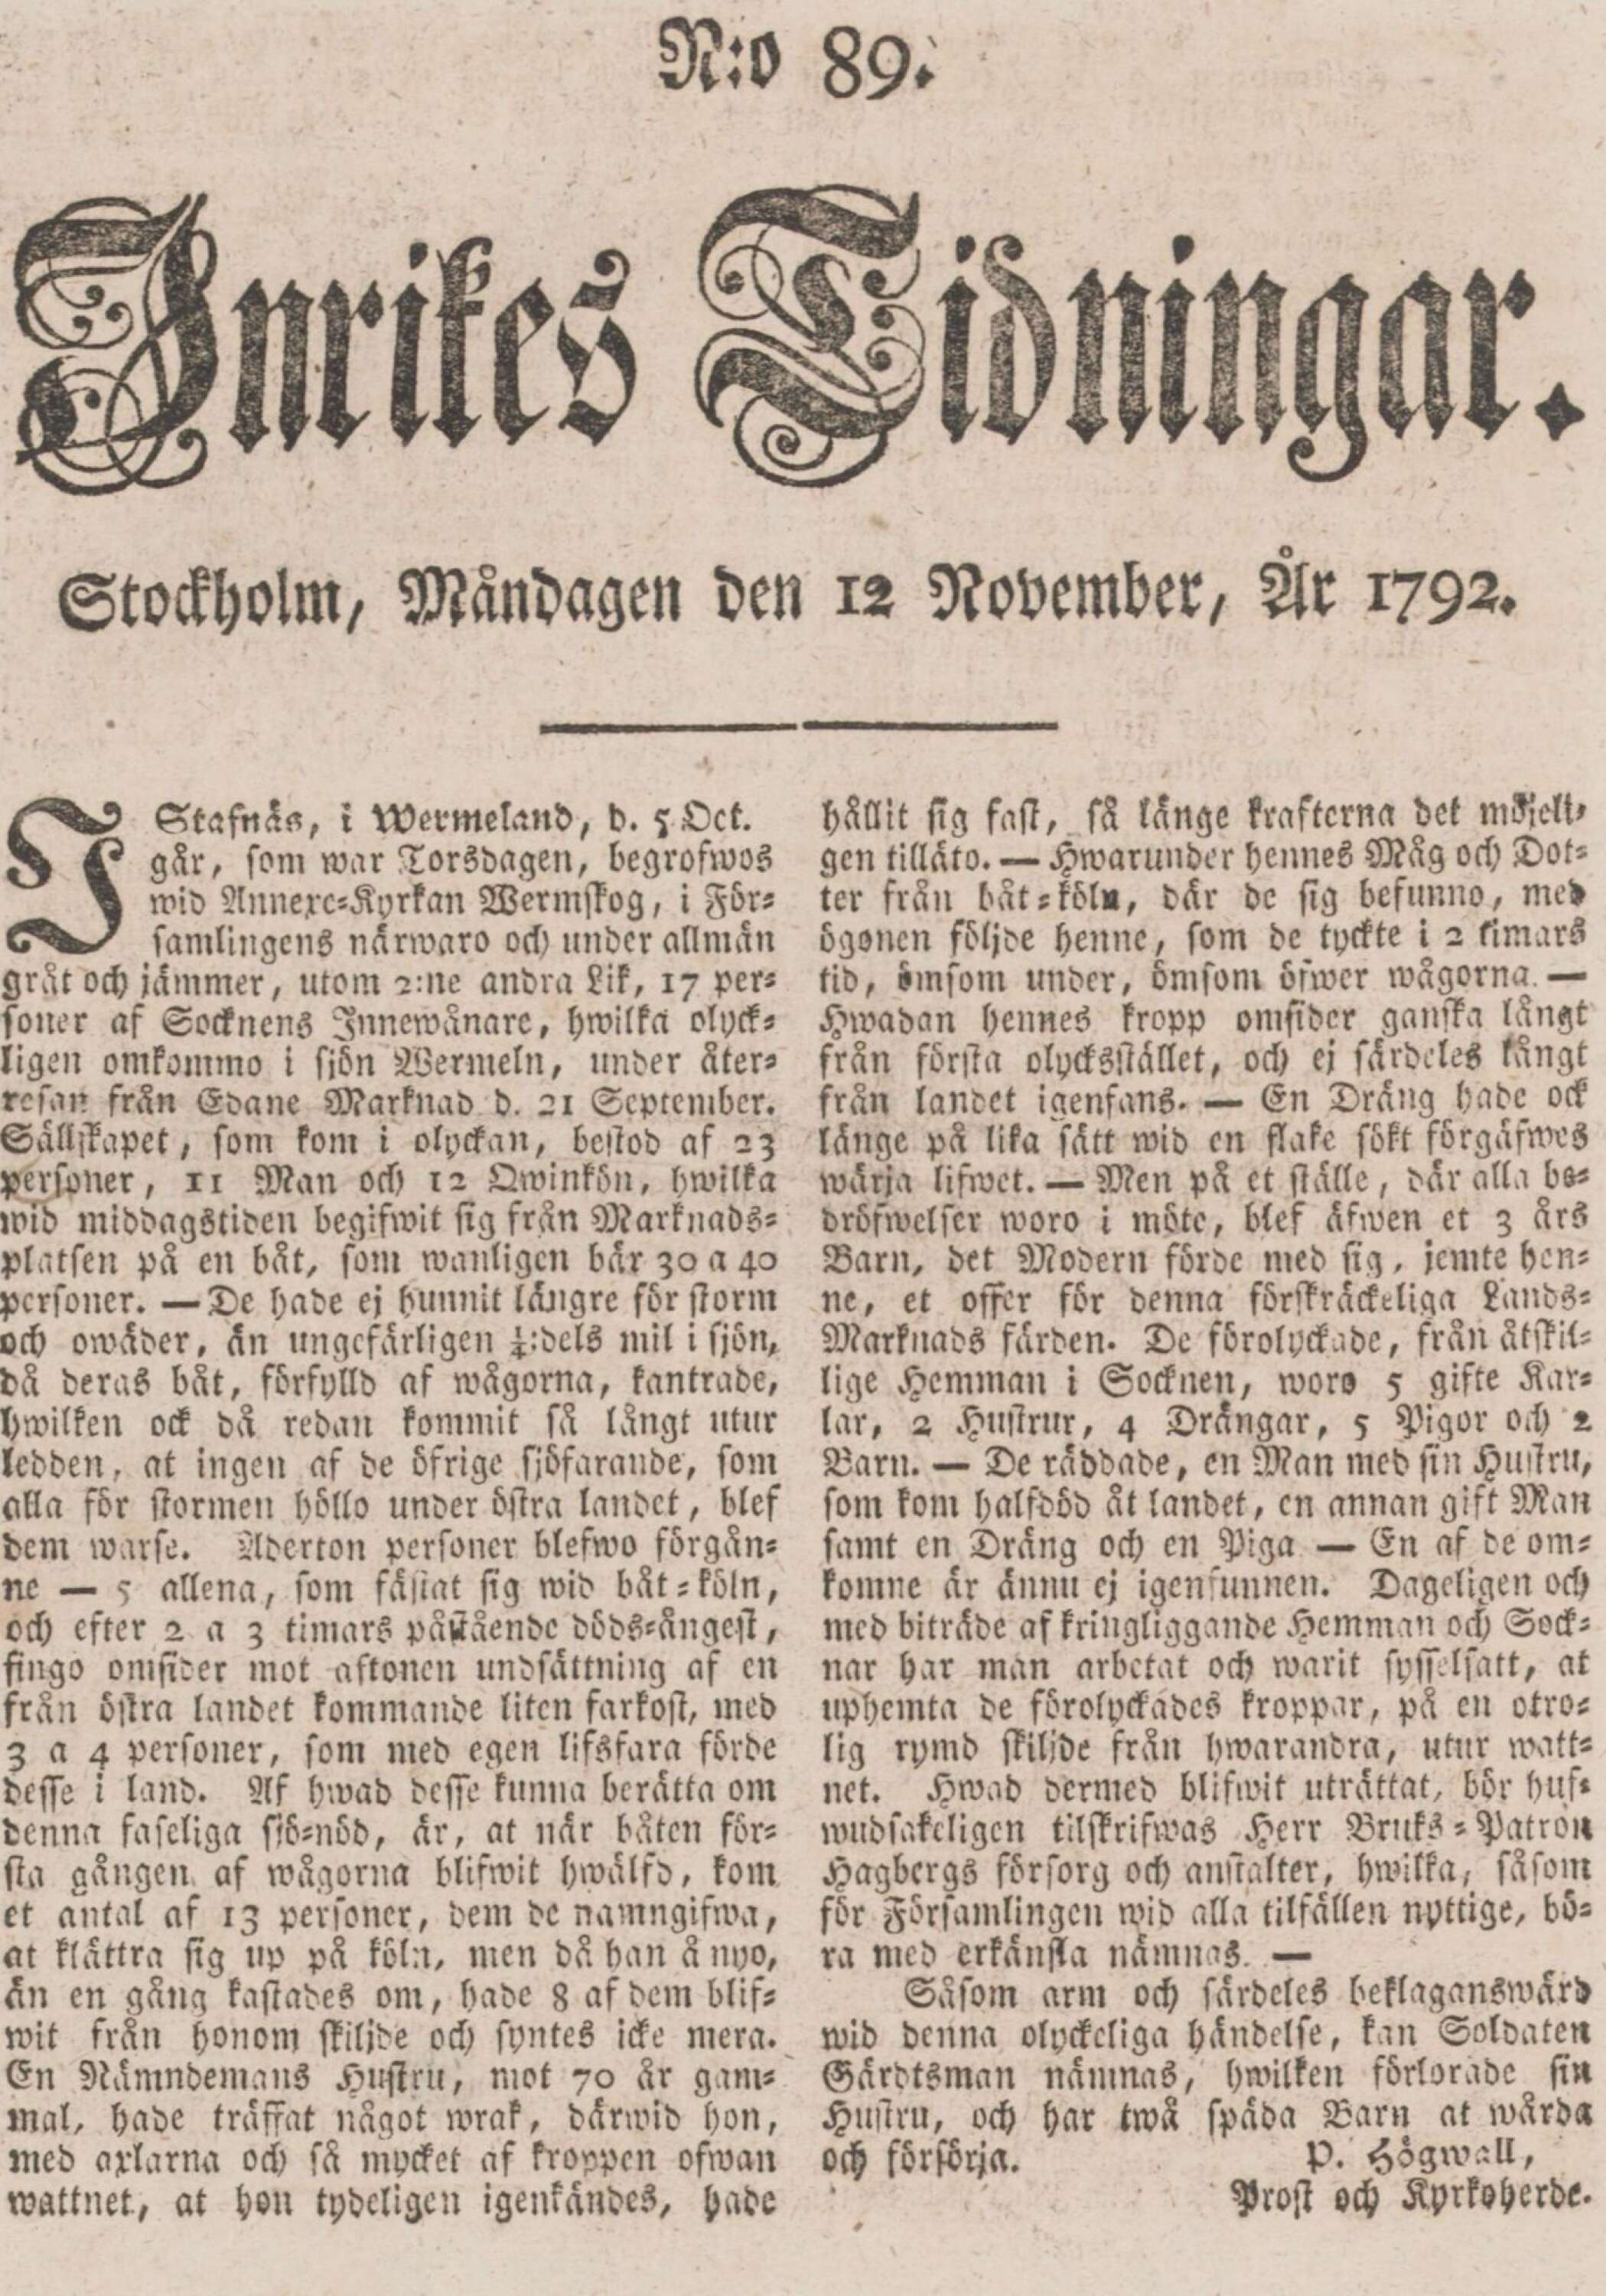 Berättelsen om olyckan fanns på första sidan i ”Inrikes tidningar” måndagen 12 november 1792.